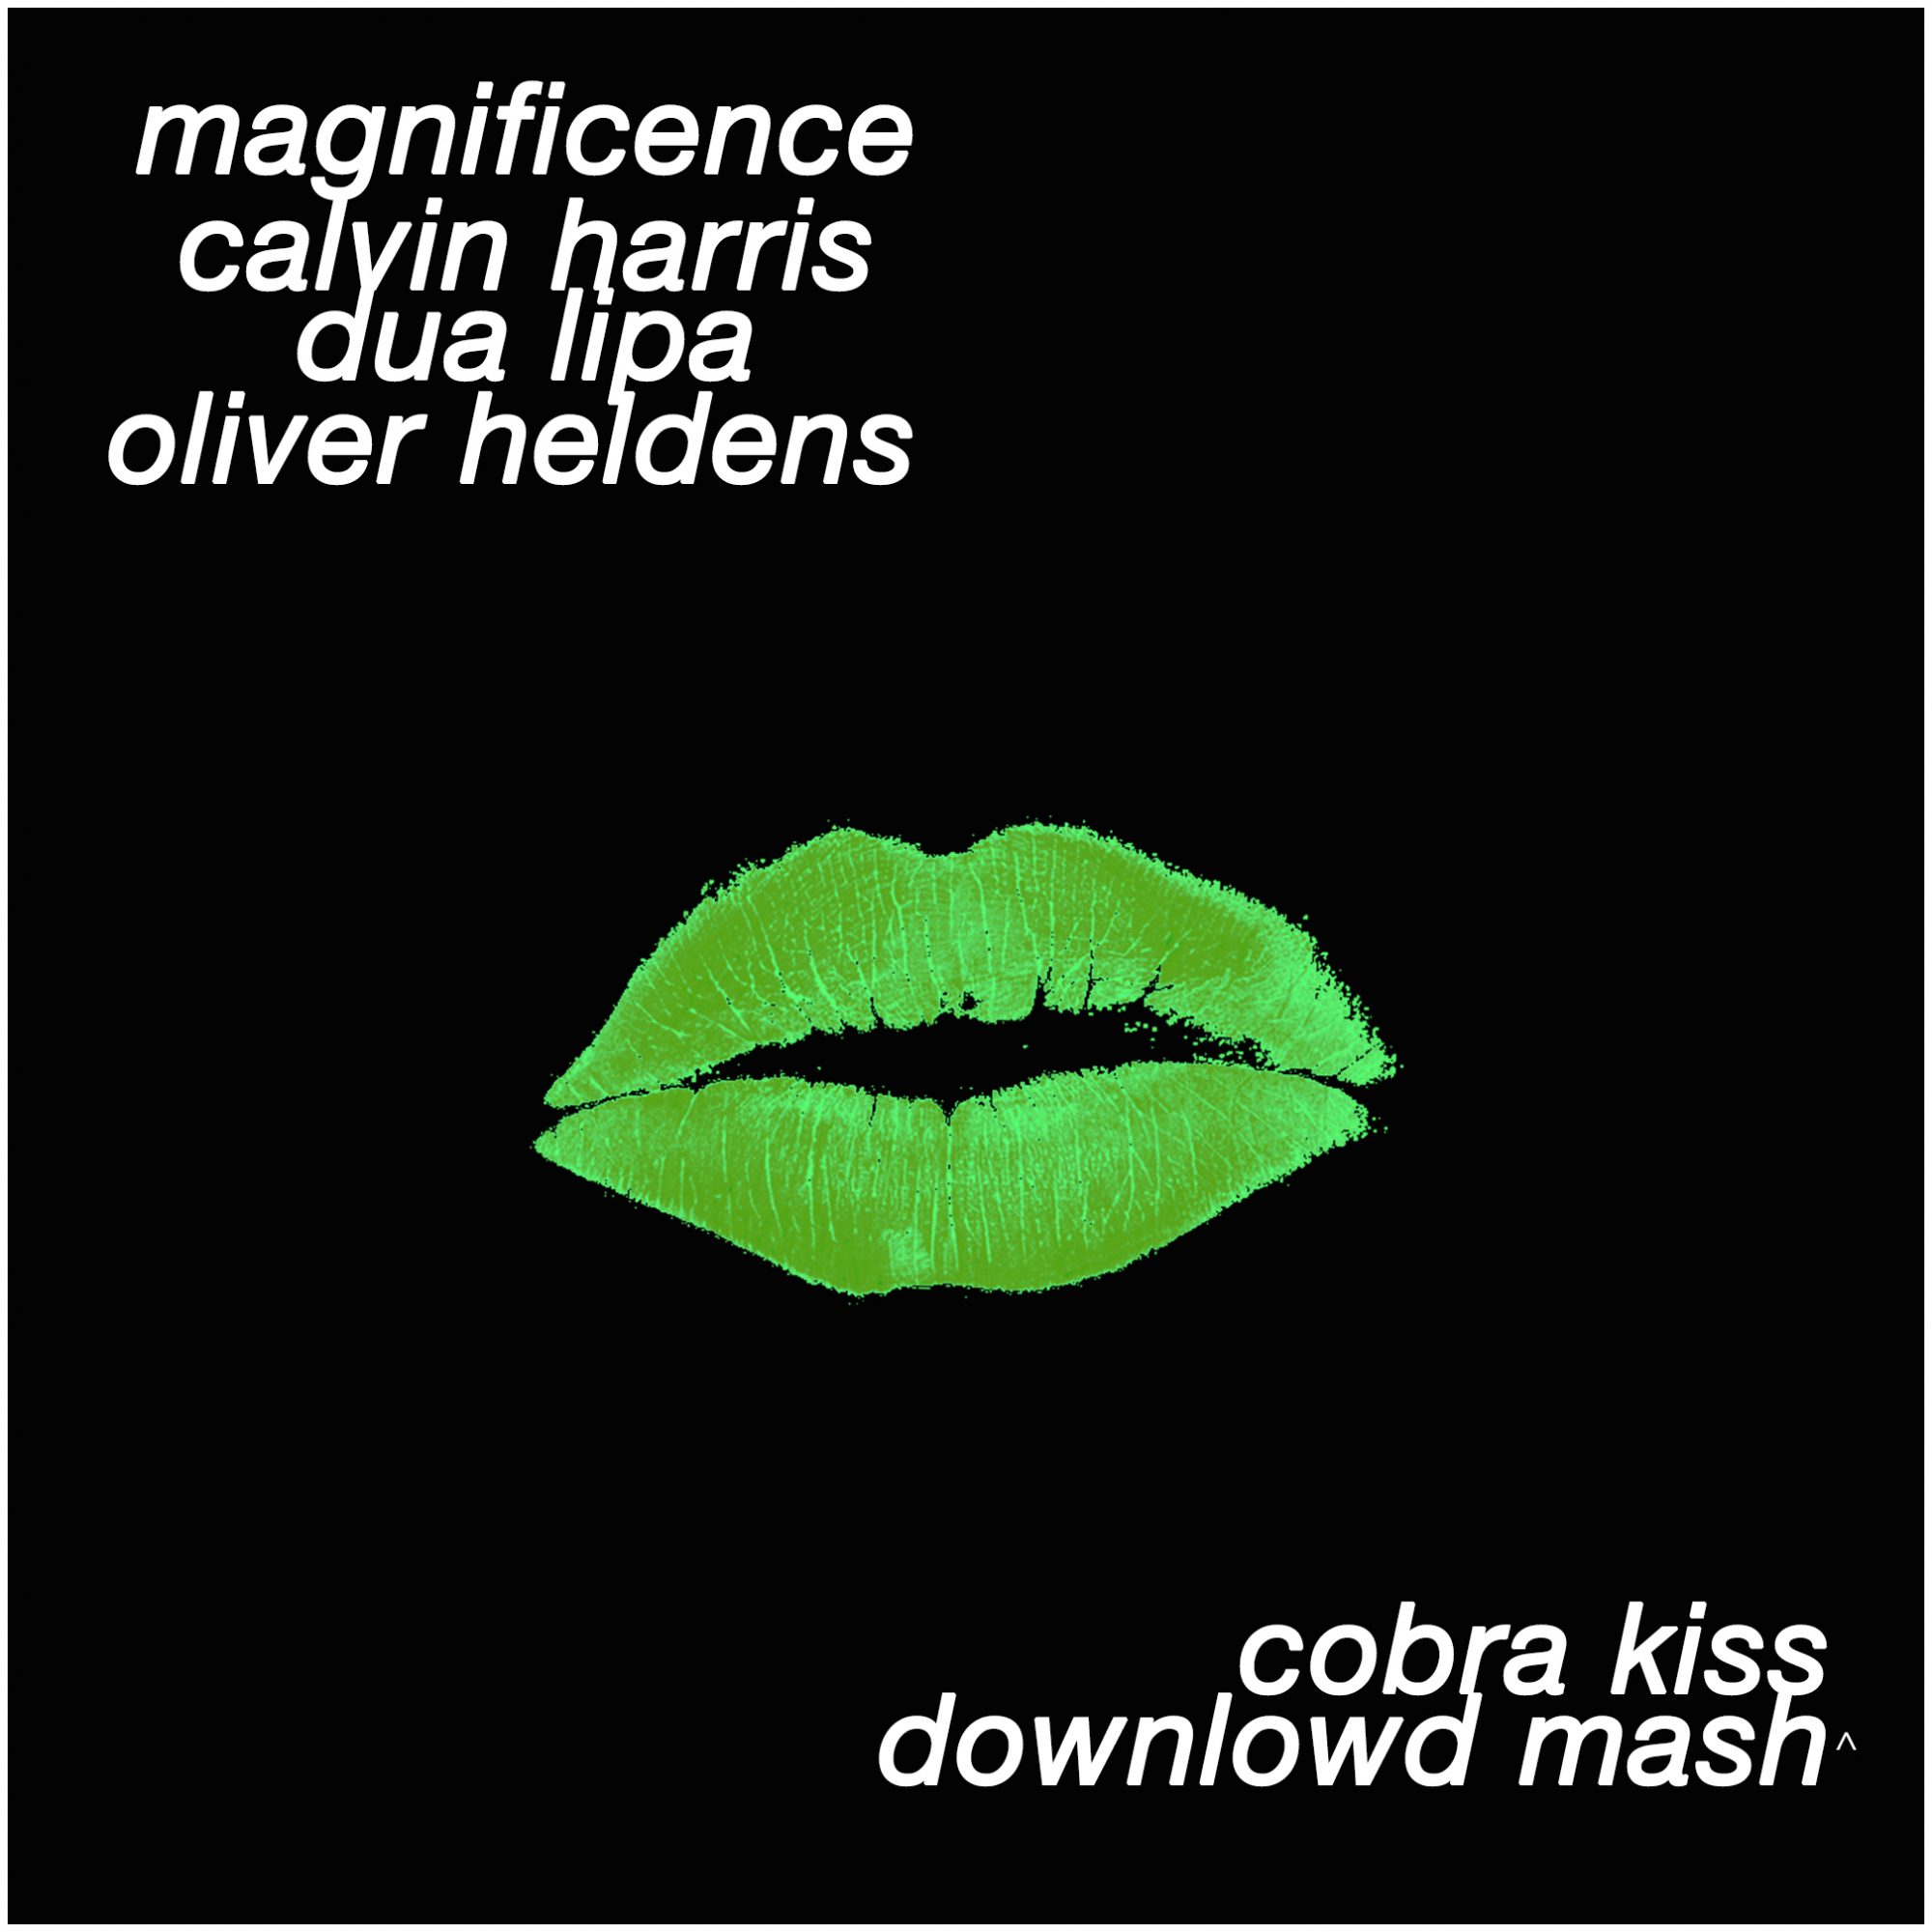 cobra kiss artwork downlowd